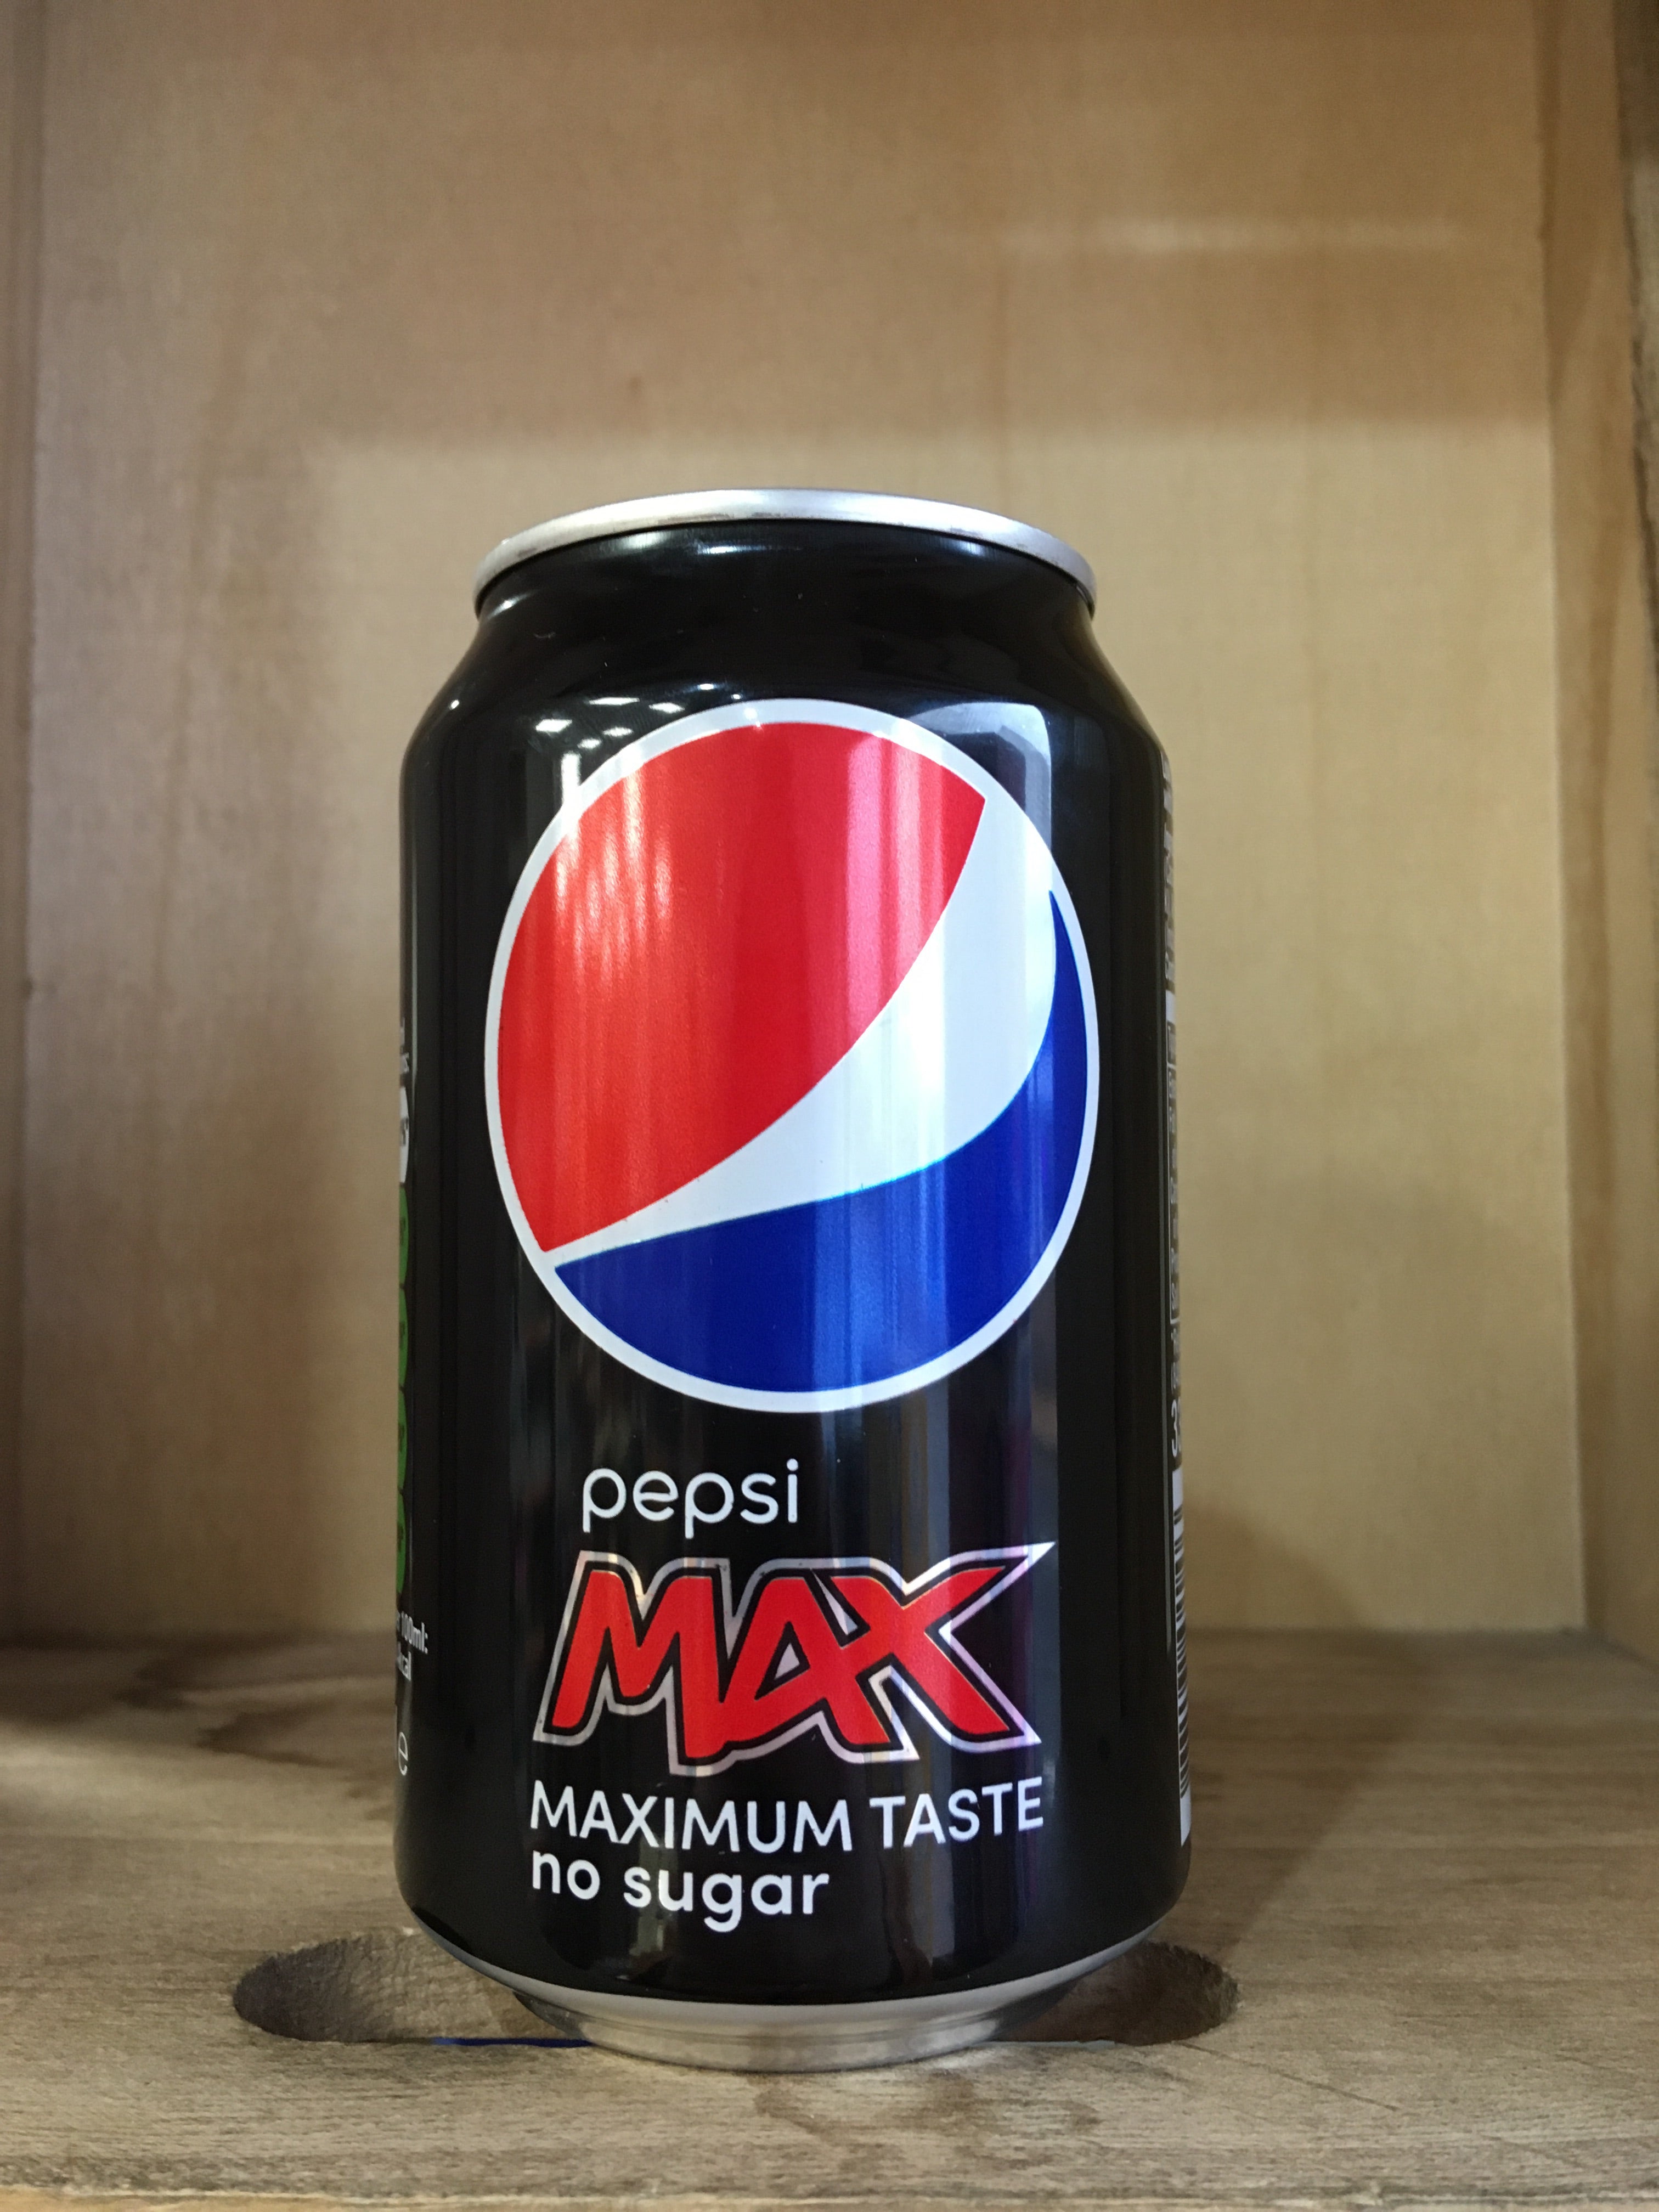 Pepsi MAX, Maximum Taste, No Sugar